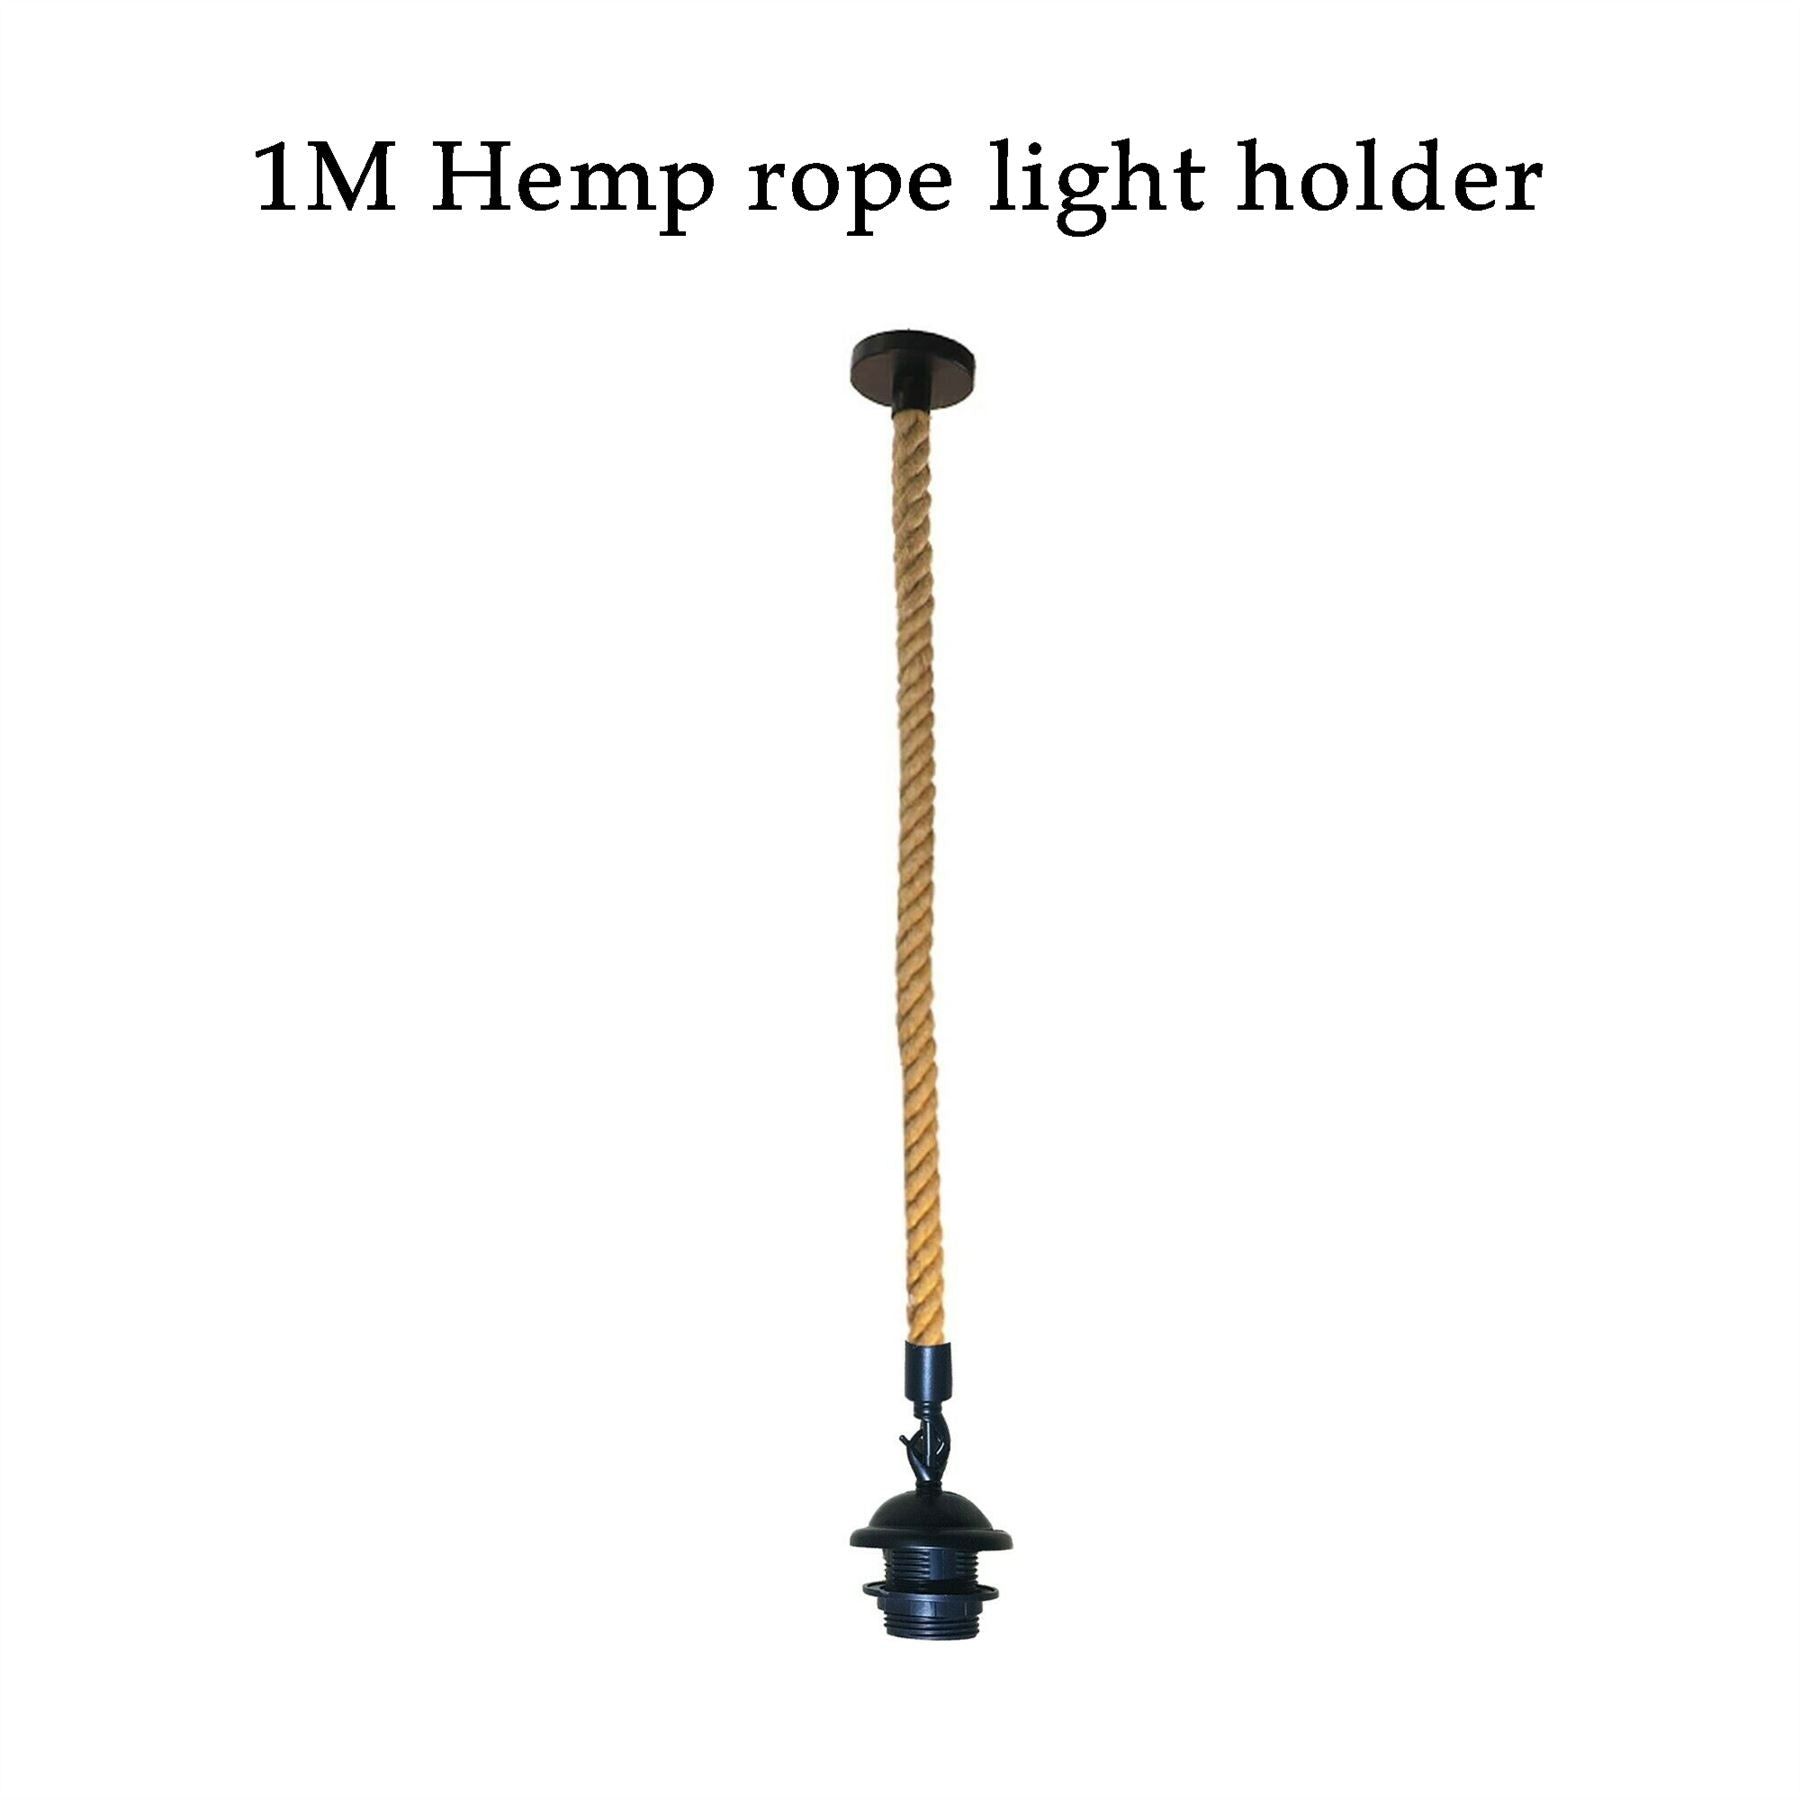 hemp rope light holder.jpg